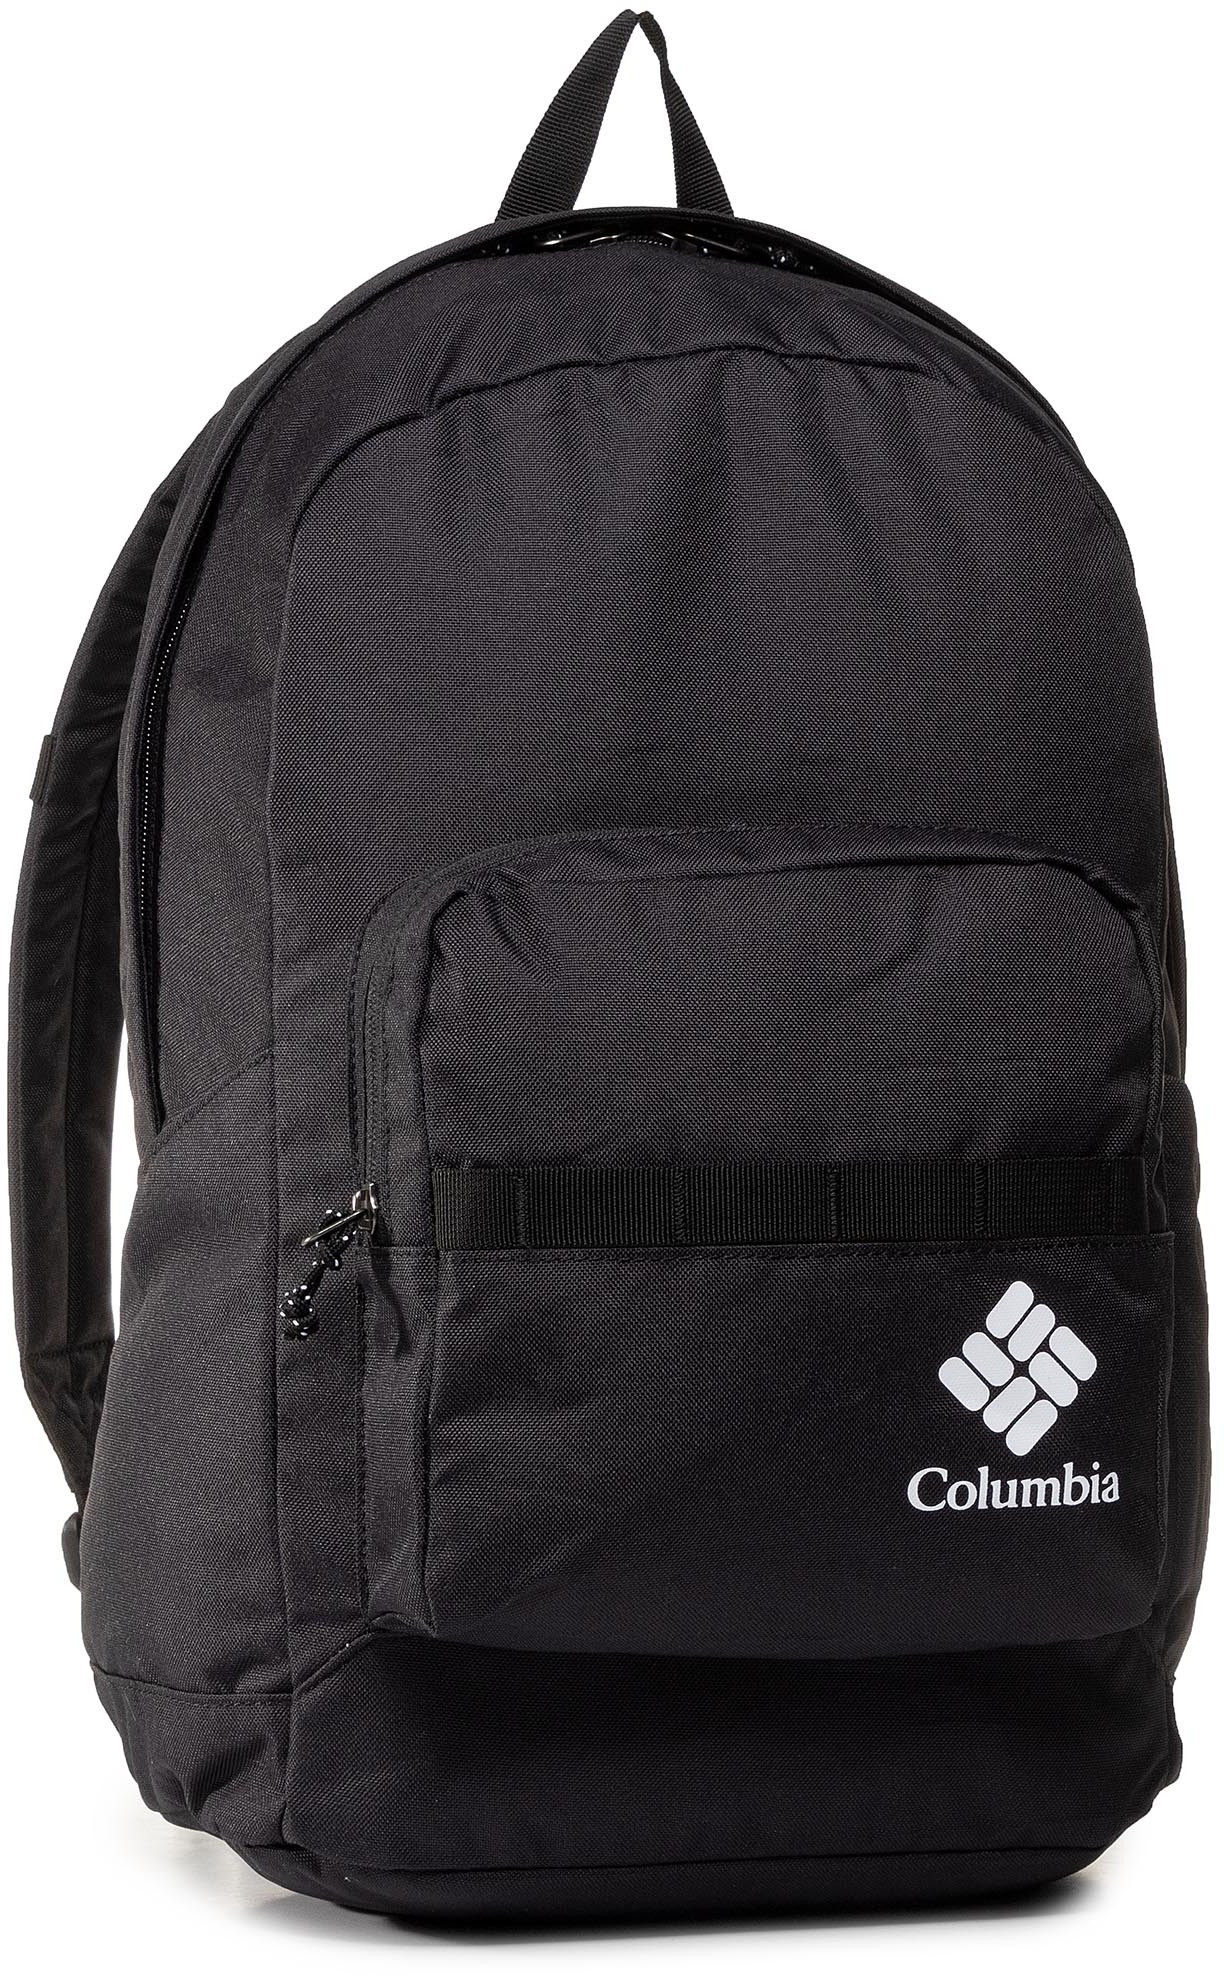 Columbia Plecak Zigzag 22L Backpack 1890021 Black 010